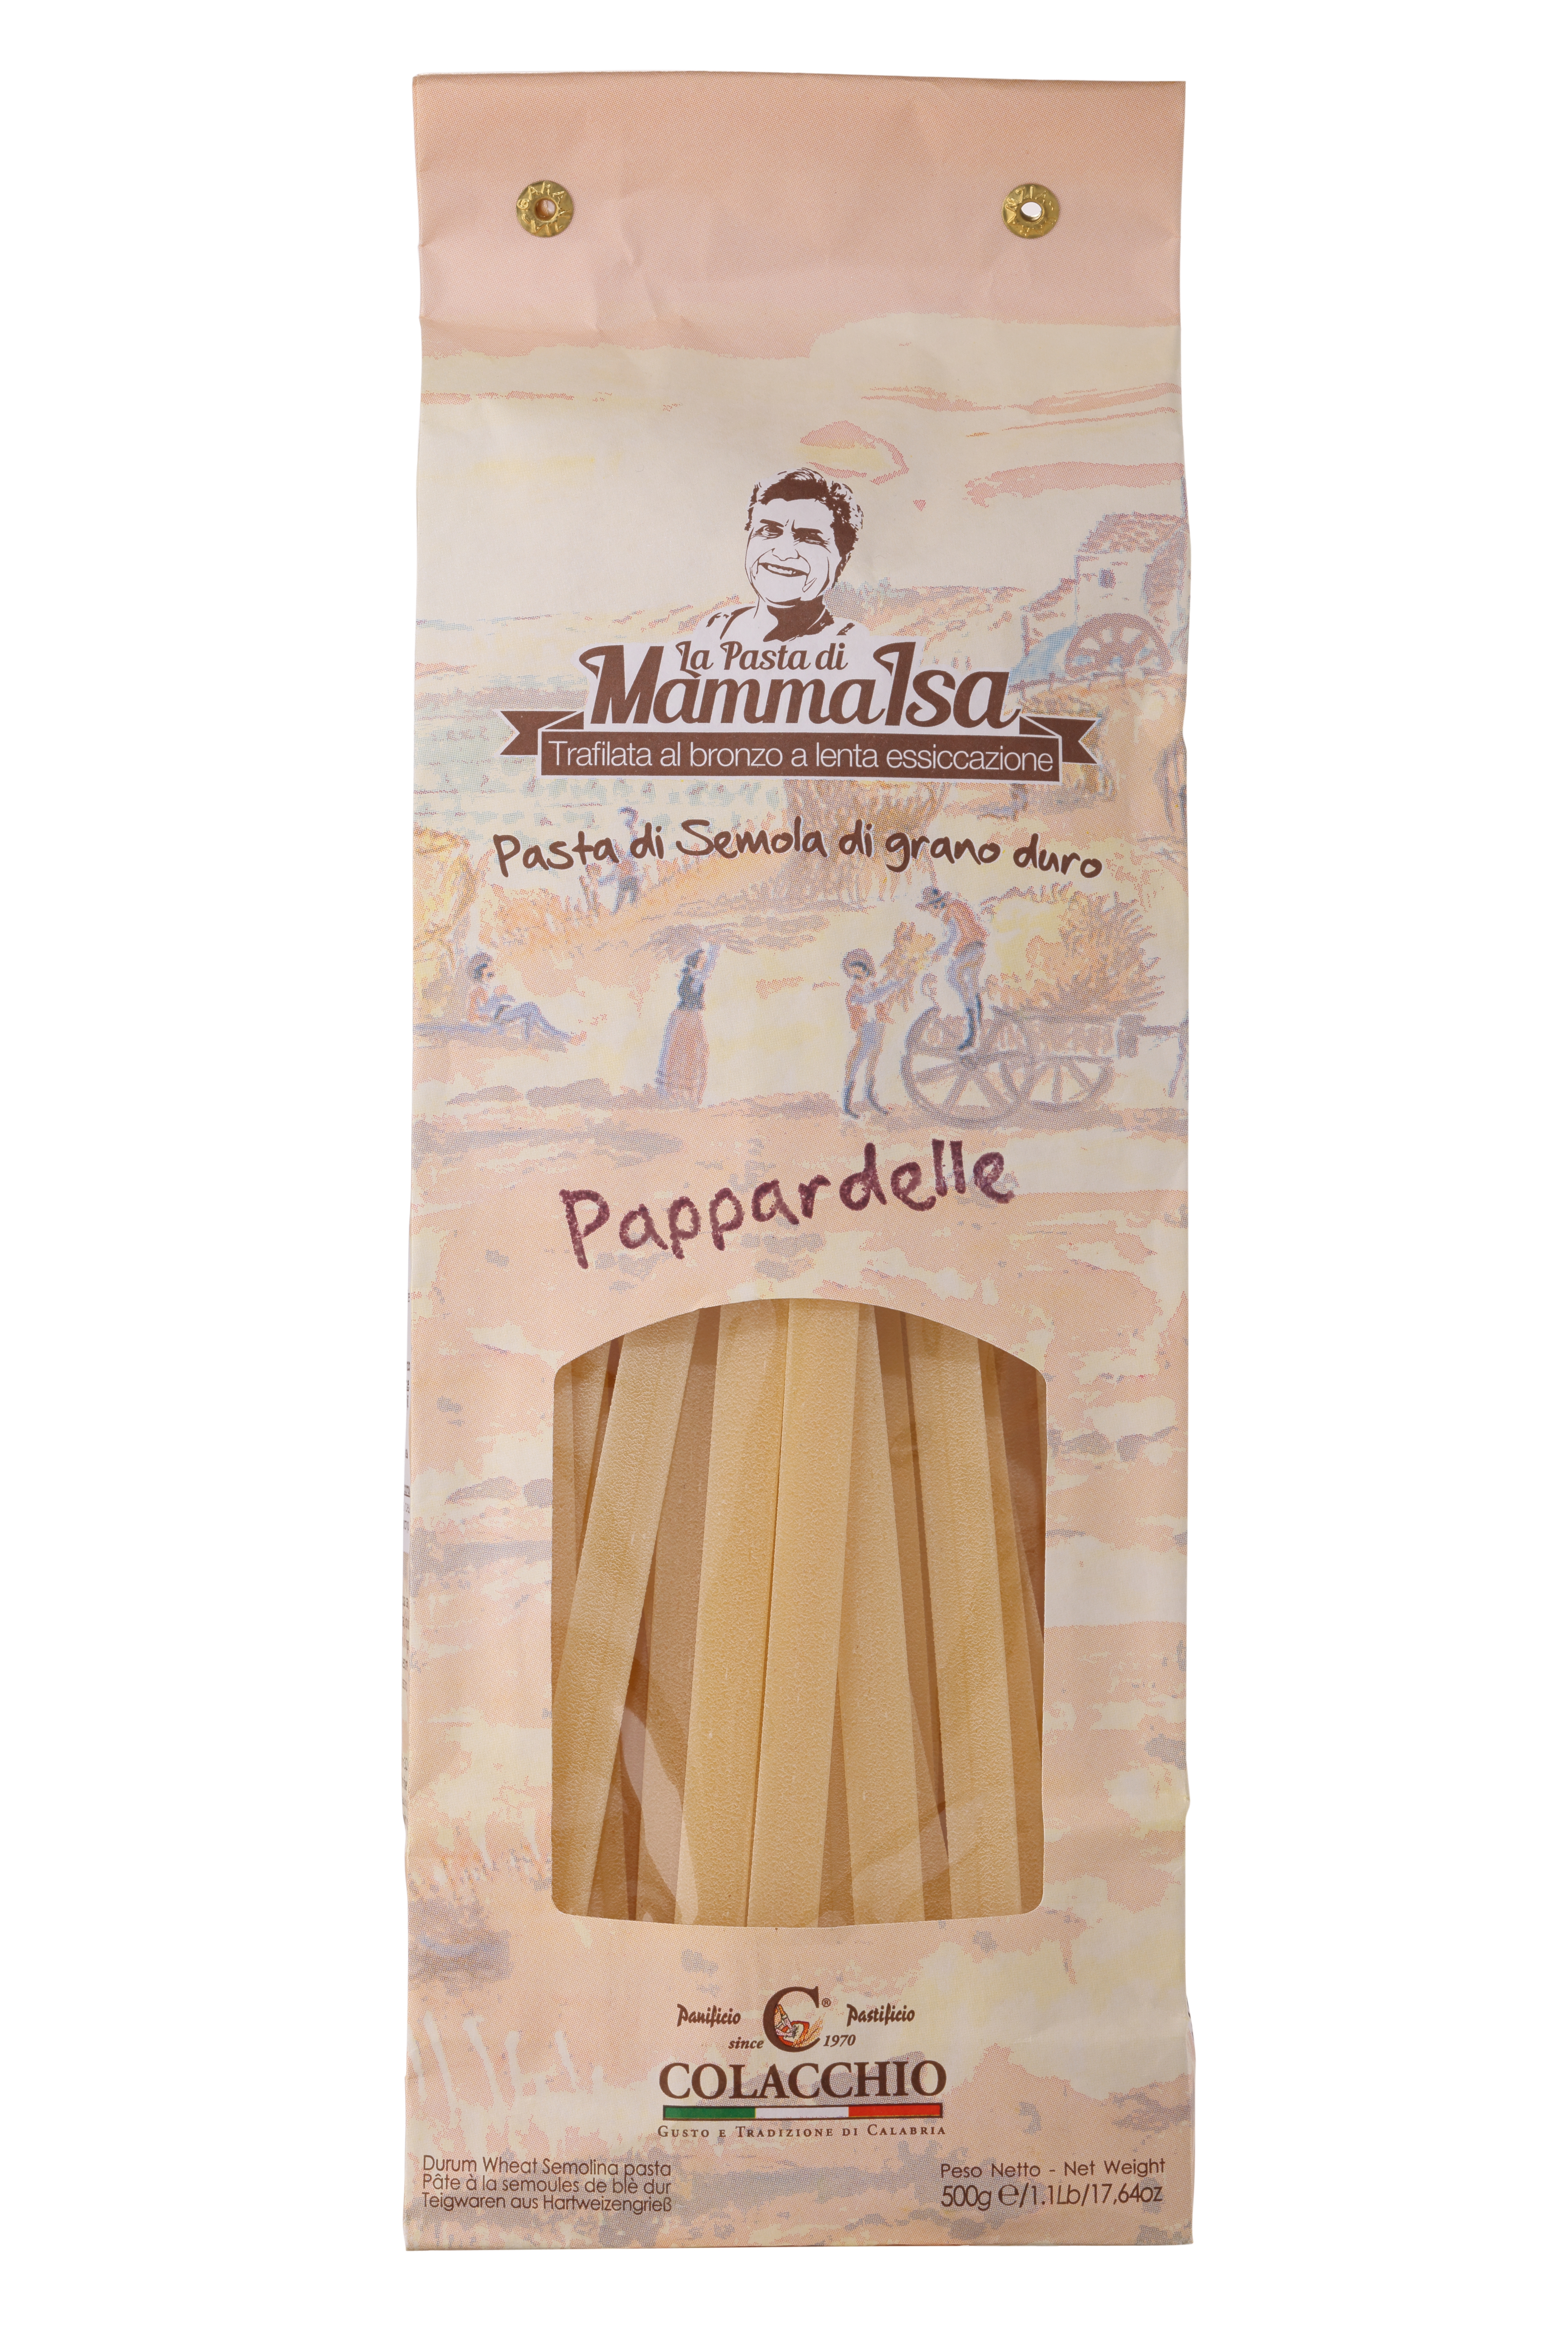 Colacchio, "Pappardelle" Pasta, 500g